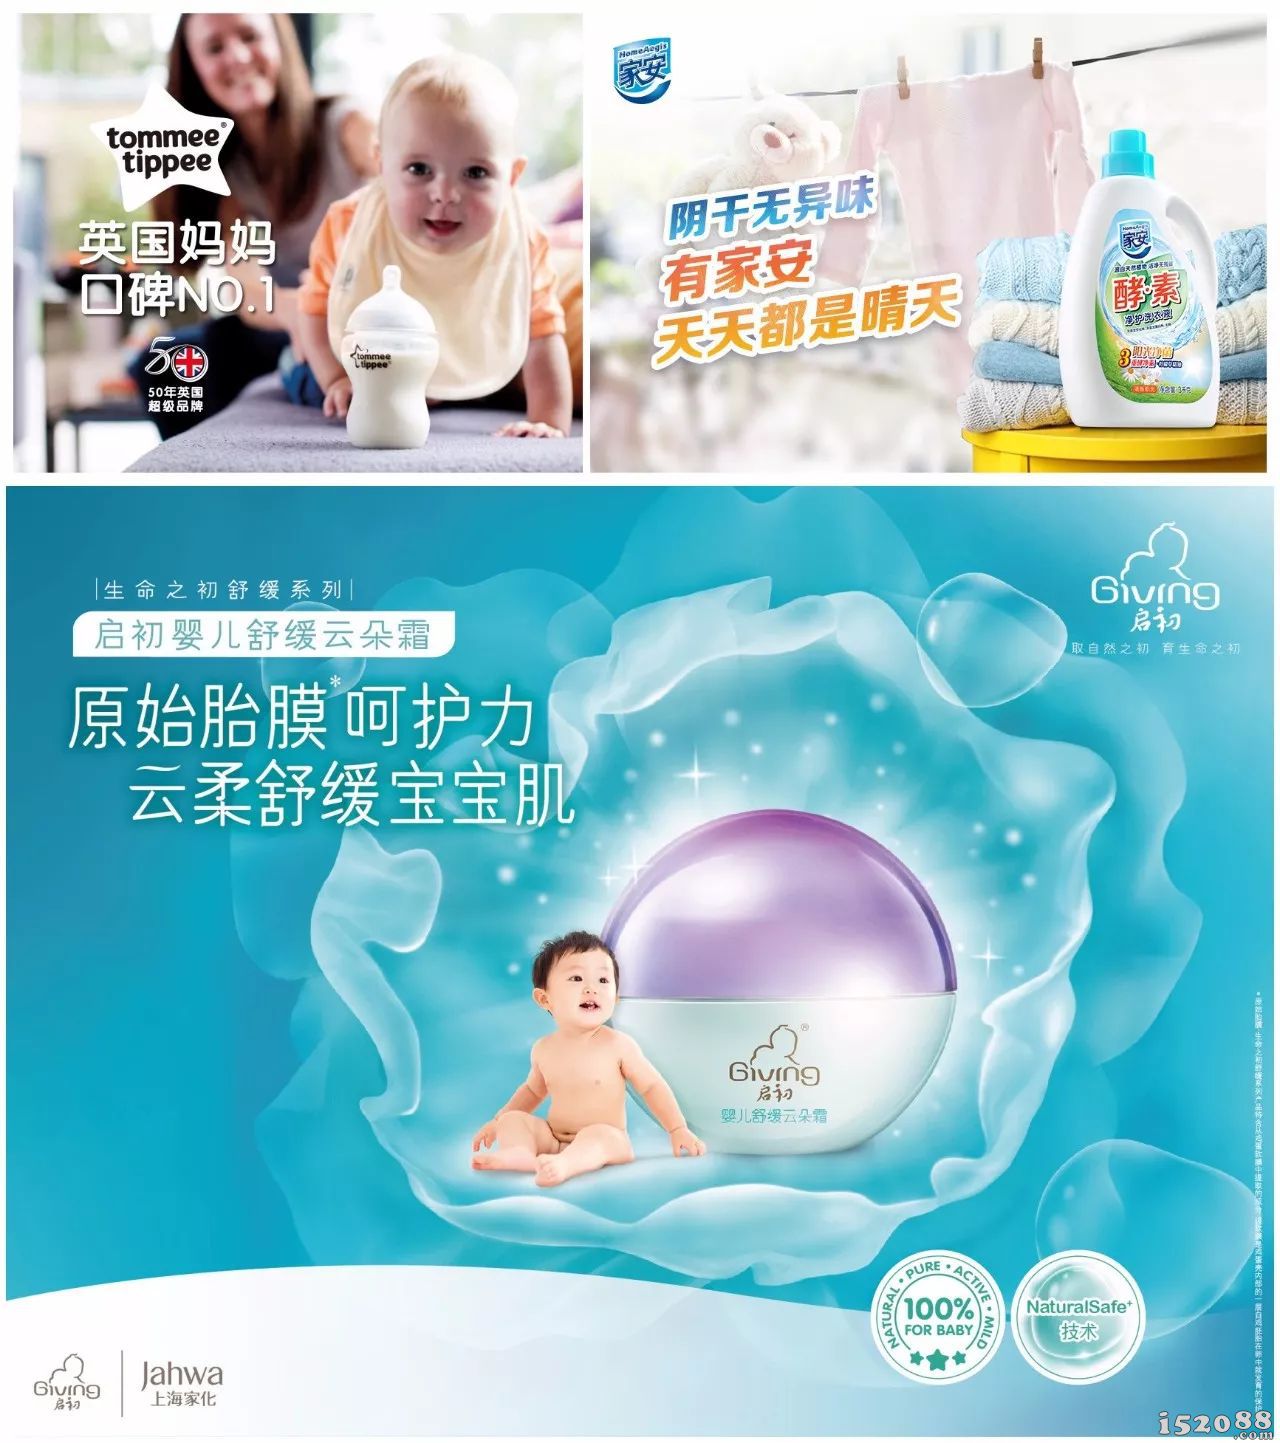 上海家化系列产品宣传海报